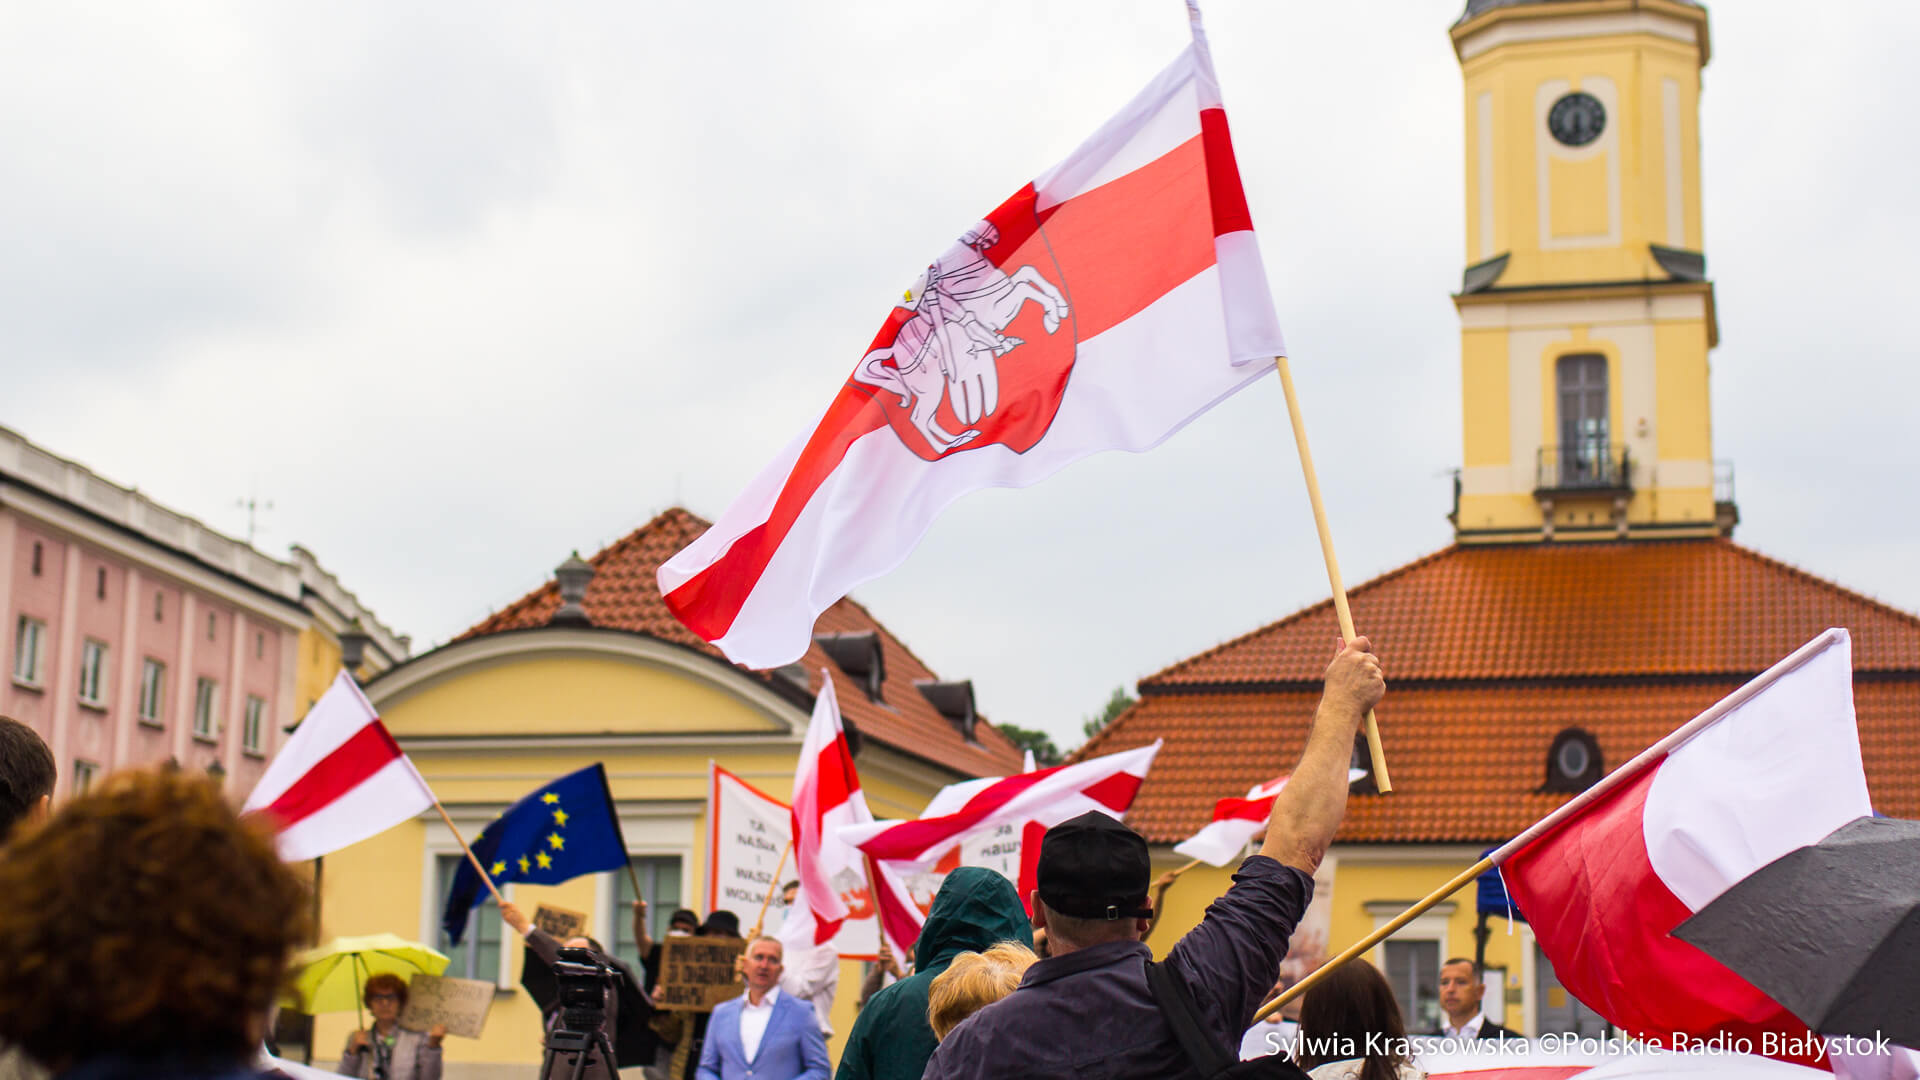 Demonstracja "Solidarni z Białorusią" w Białymstoku, fot. Sylwia Krassowska [Archiwum]